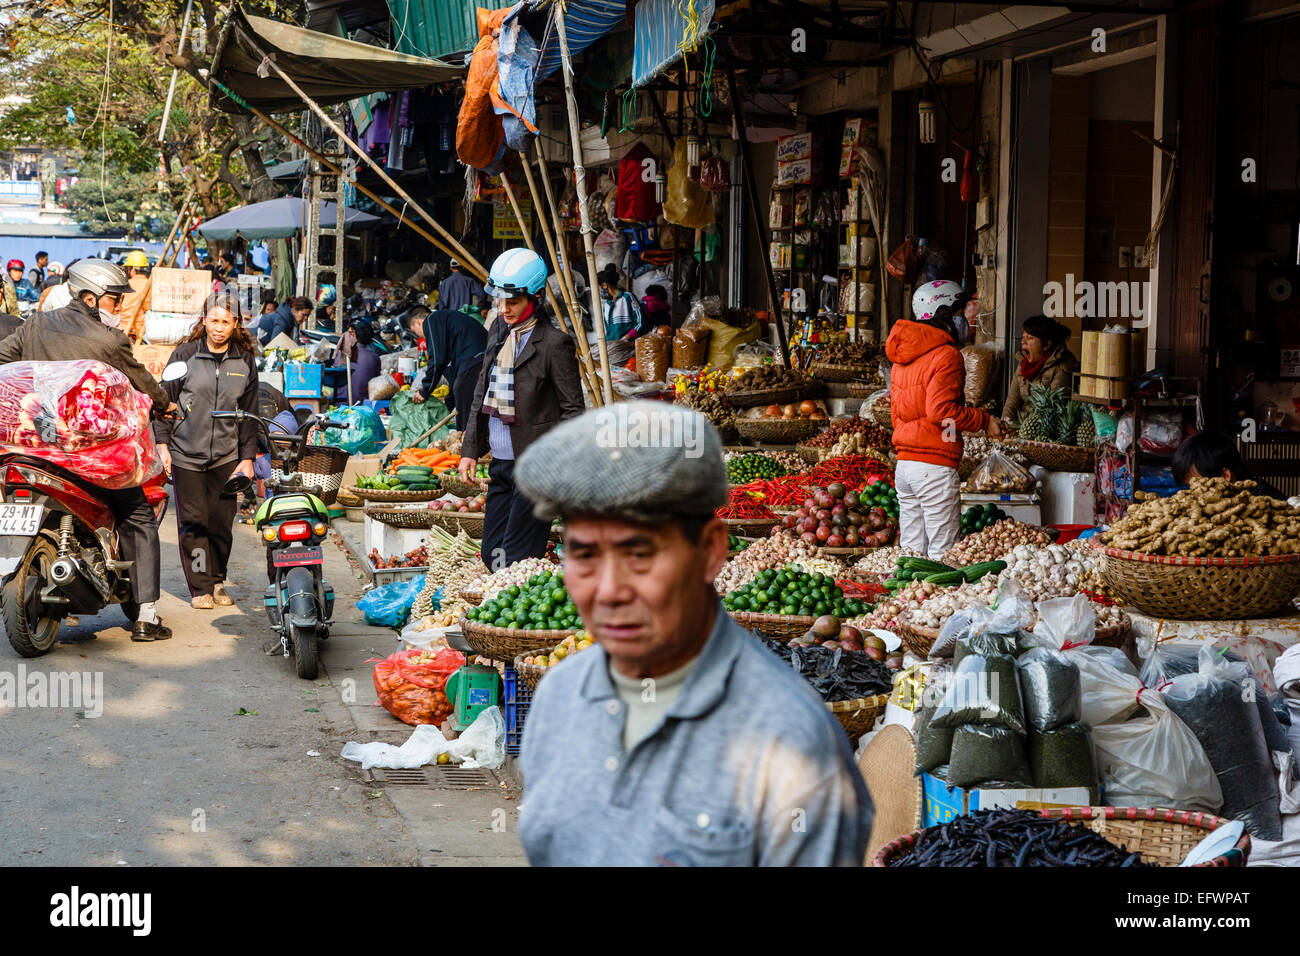 Marché dans la vieille ville, Hanoi, Vietnam. Banque D'Images